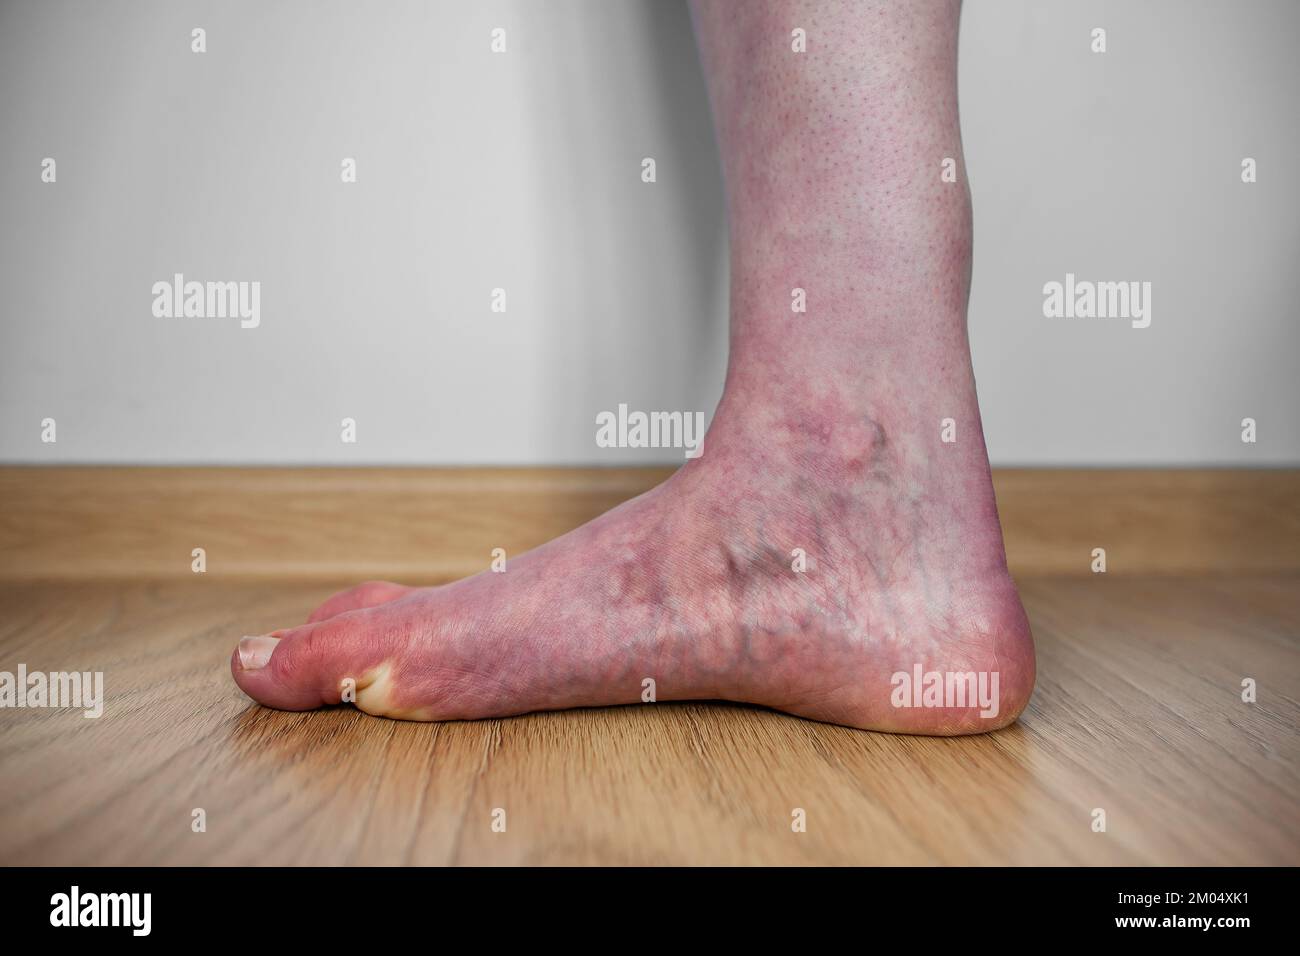 Bein einer Person mit orthostatischem Intoleranzsyndrom mit violetter Verfärbung im Stehen, Dysautonomie-Blutansammlung in den Beinen Livedo reticularis Stockfoto